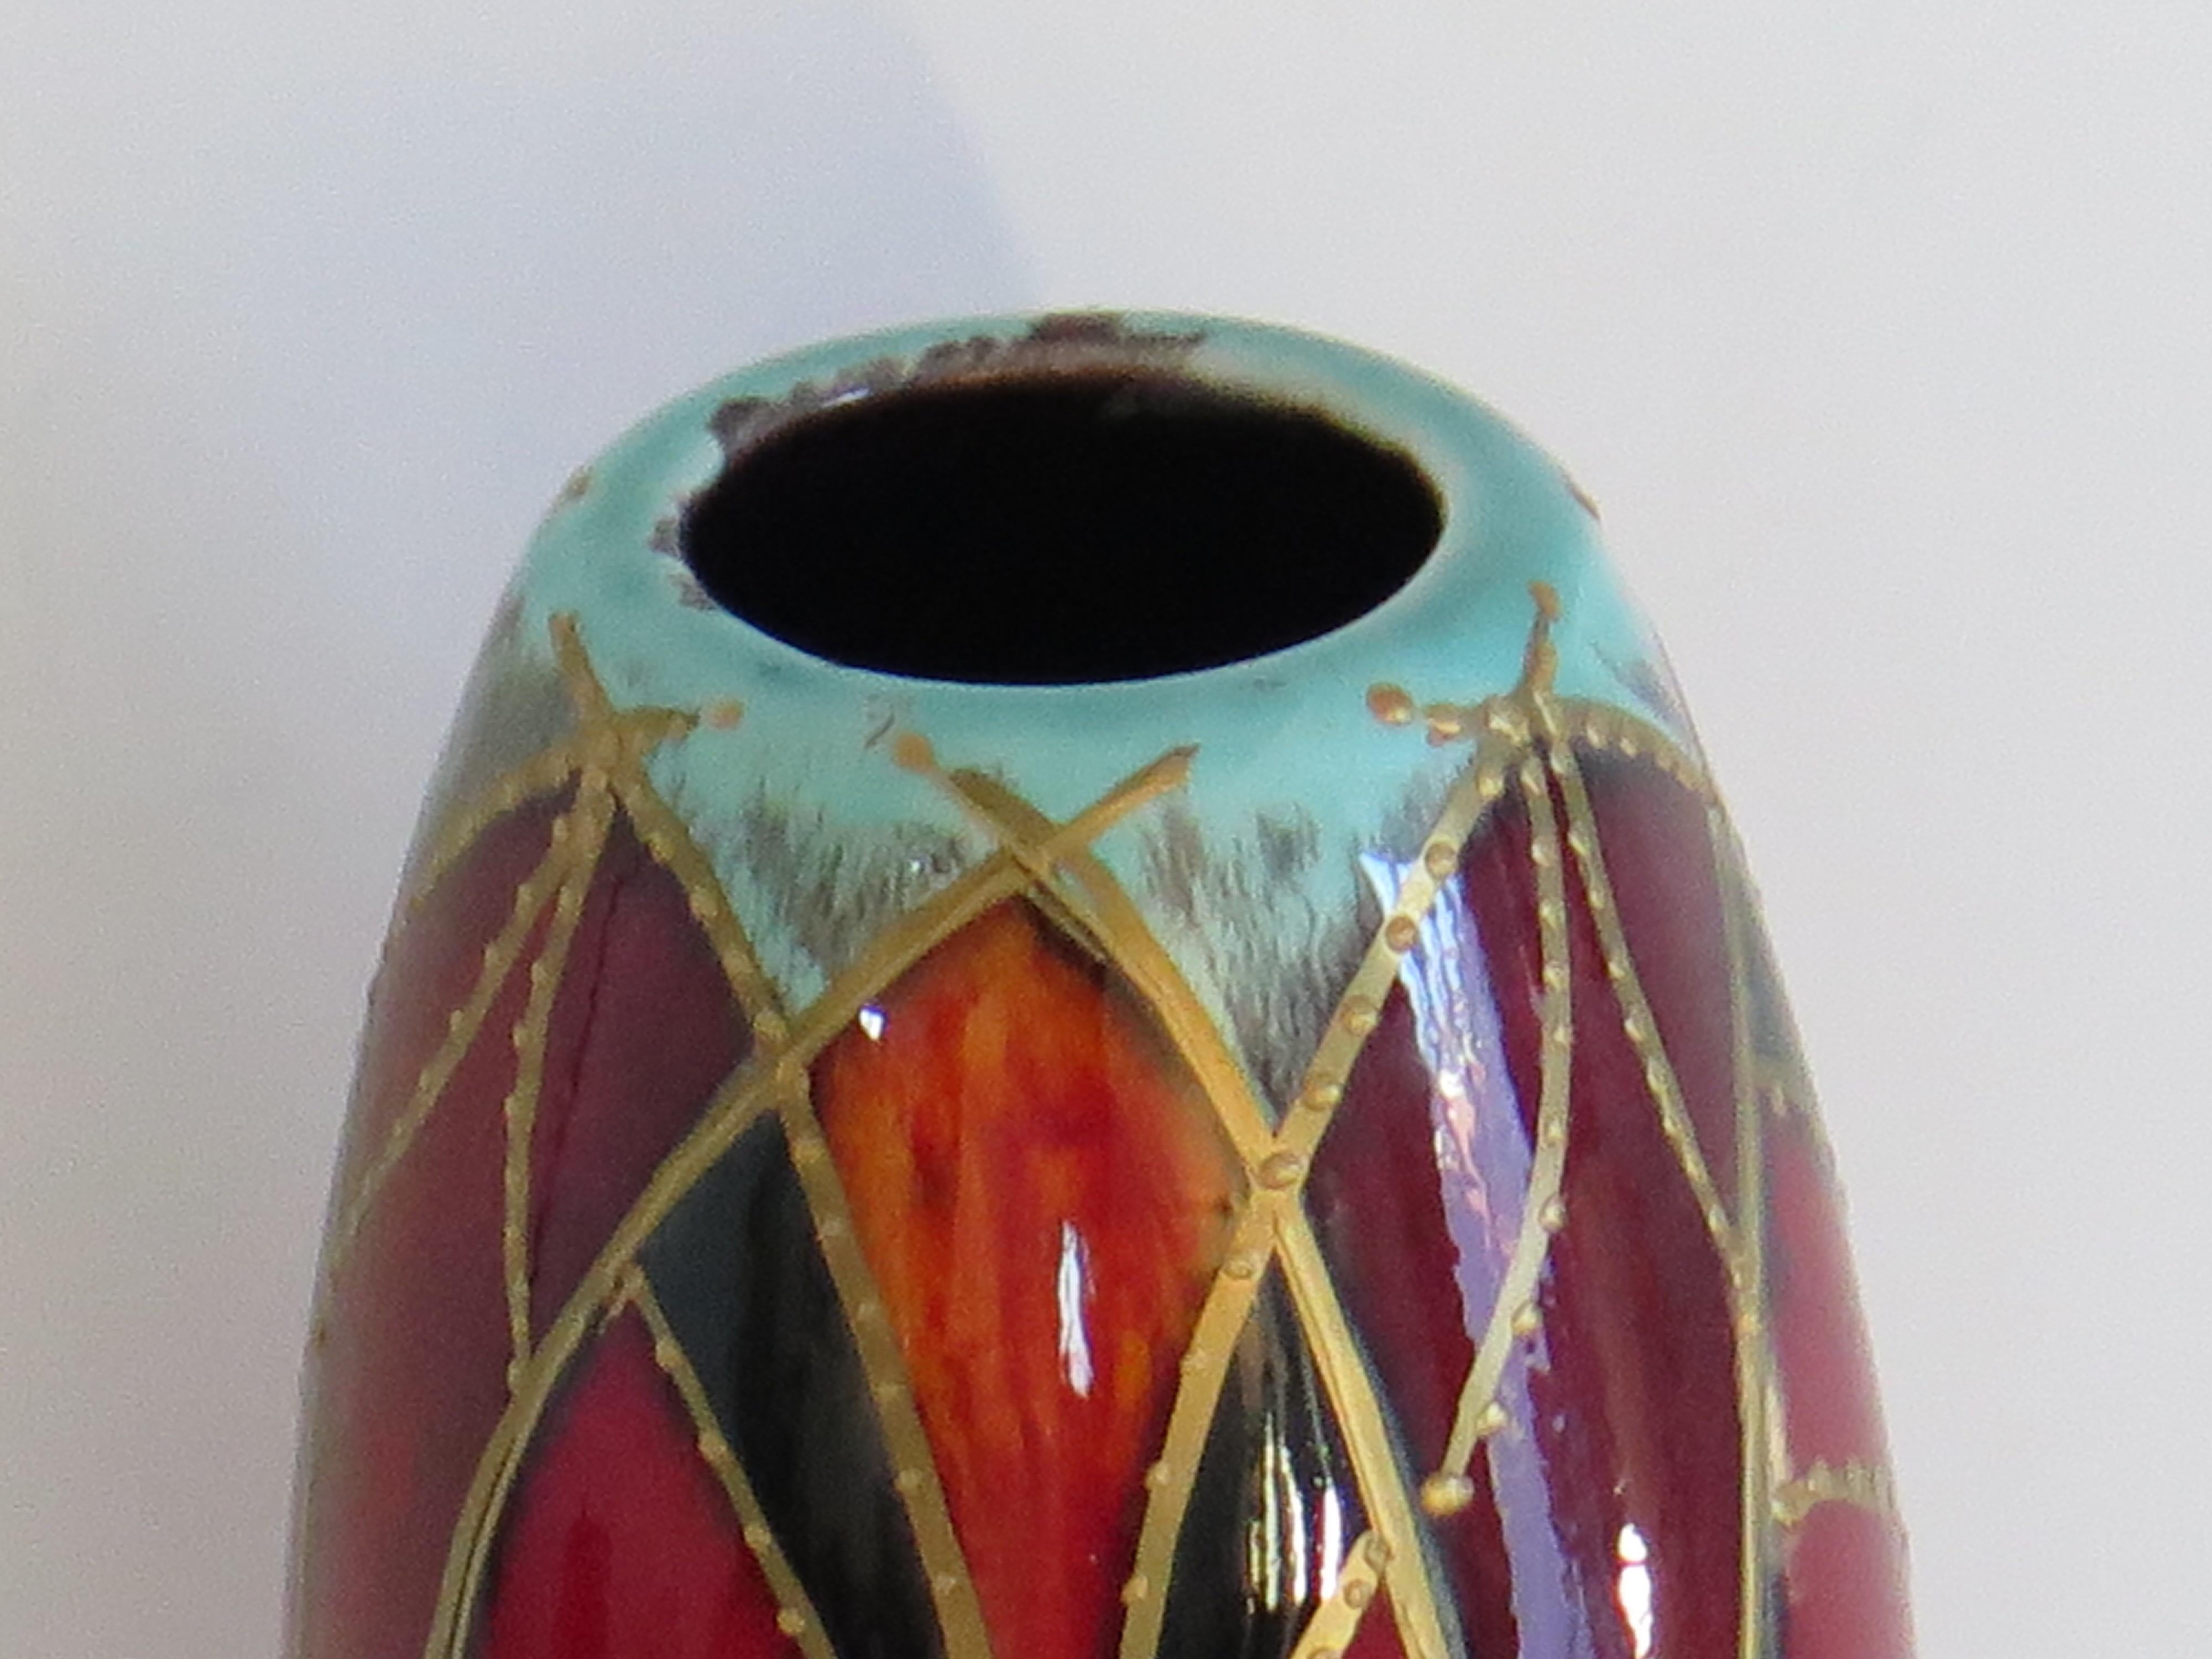 Dies ist eine schöne handgefertigte und handbemalte Vase der bekannten Designerin Anita Harris aus Stoke on Trent, England, aus dem Jahr 2010.

Die Vase ist sehr gut getöpfert und hat eine zylindrische Form.

Die Vase ist reichhaltig von Hand mit